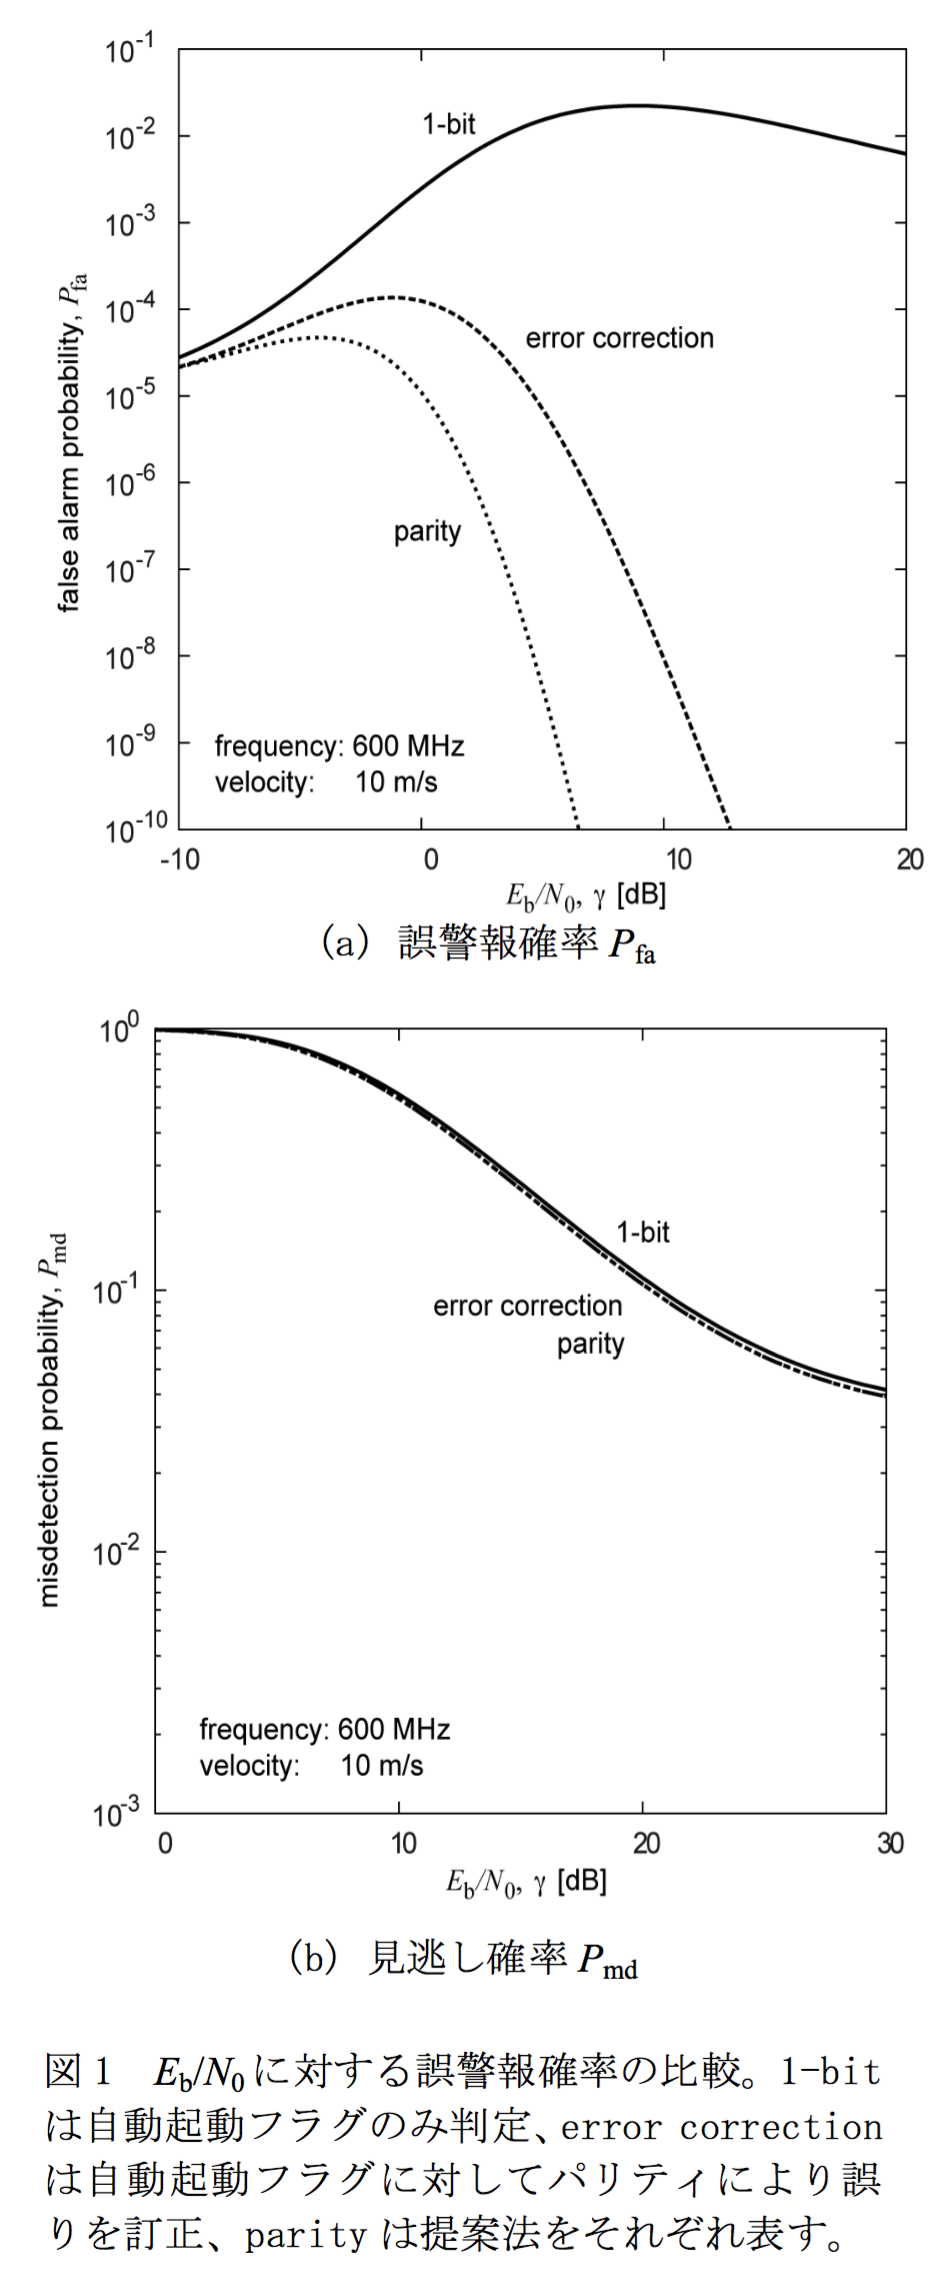 Eb/N0に対する誤警報確率の比較。1-bitは自動起動フラグのみ判定、error correctionは自動起動フラグに対してパリティにより誤りを訂正、parityは提案法をそれぞれ表す。